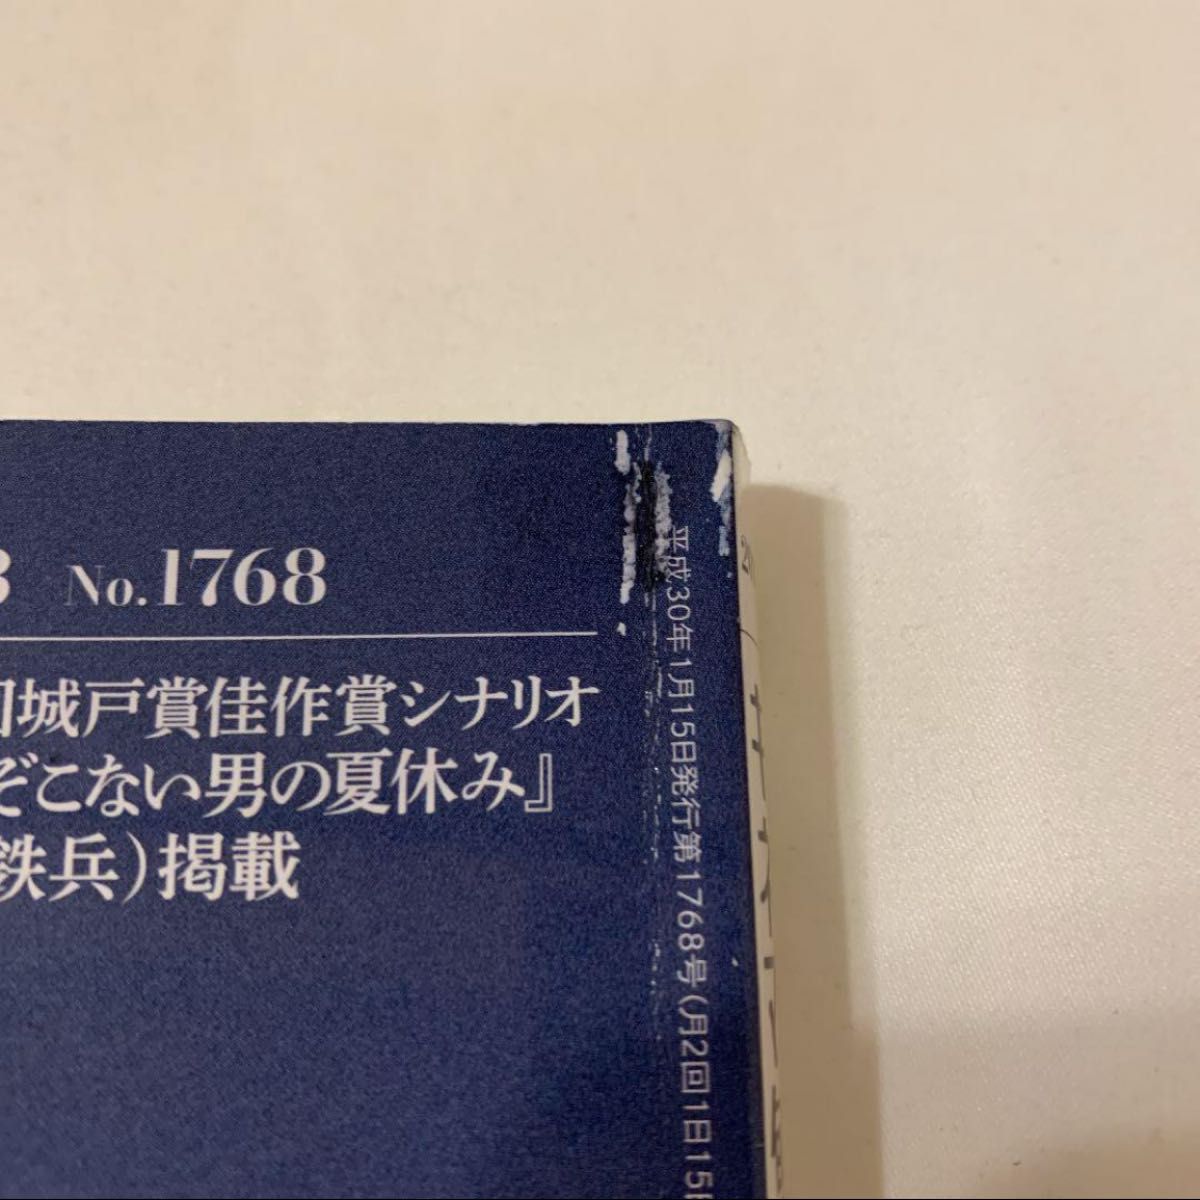 キネマ旬報 2018年1月下旬号 No.1768 窪田正孝